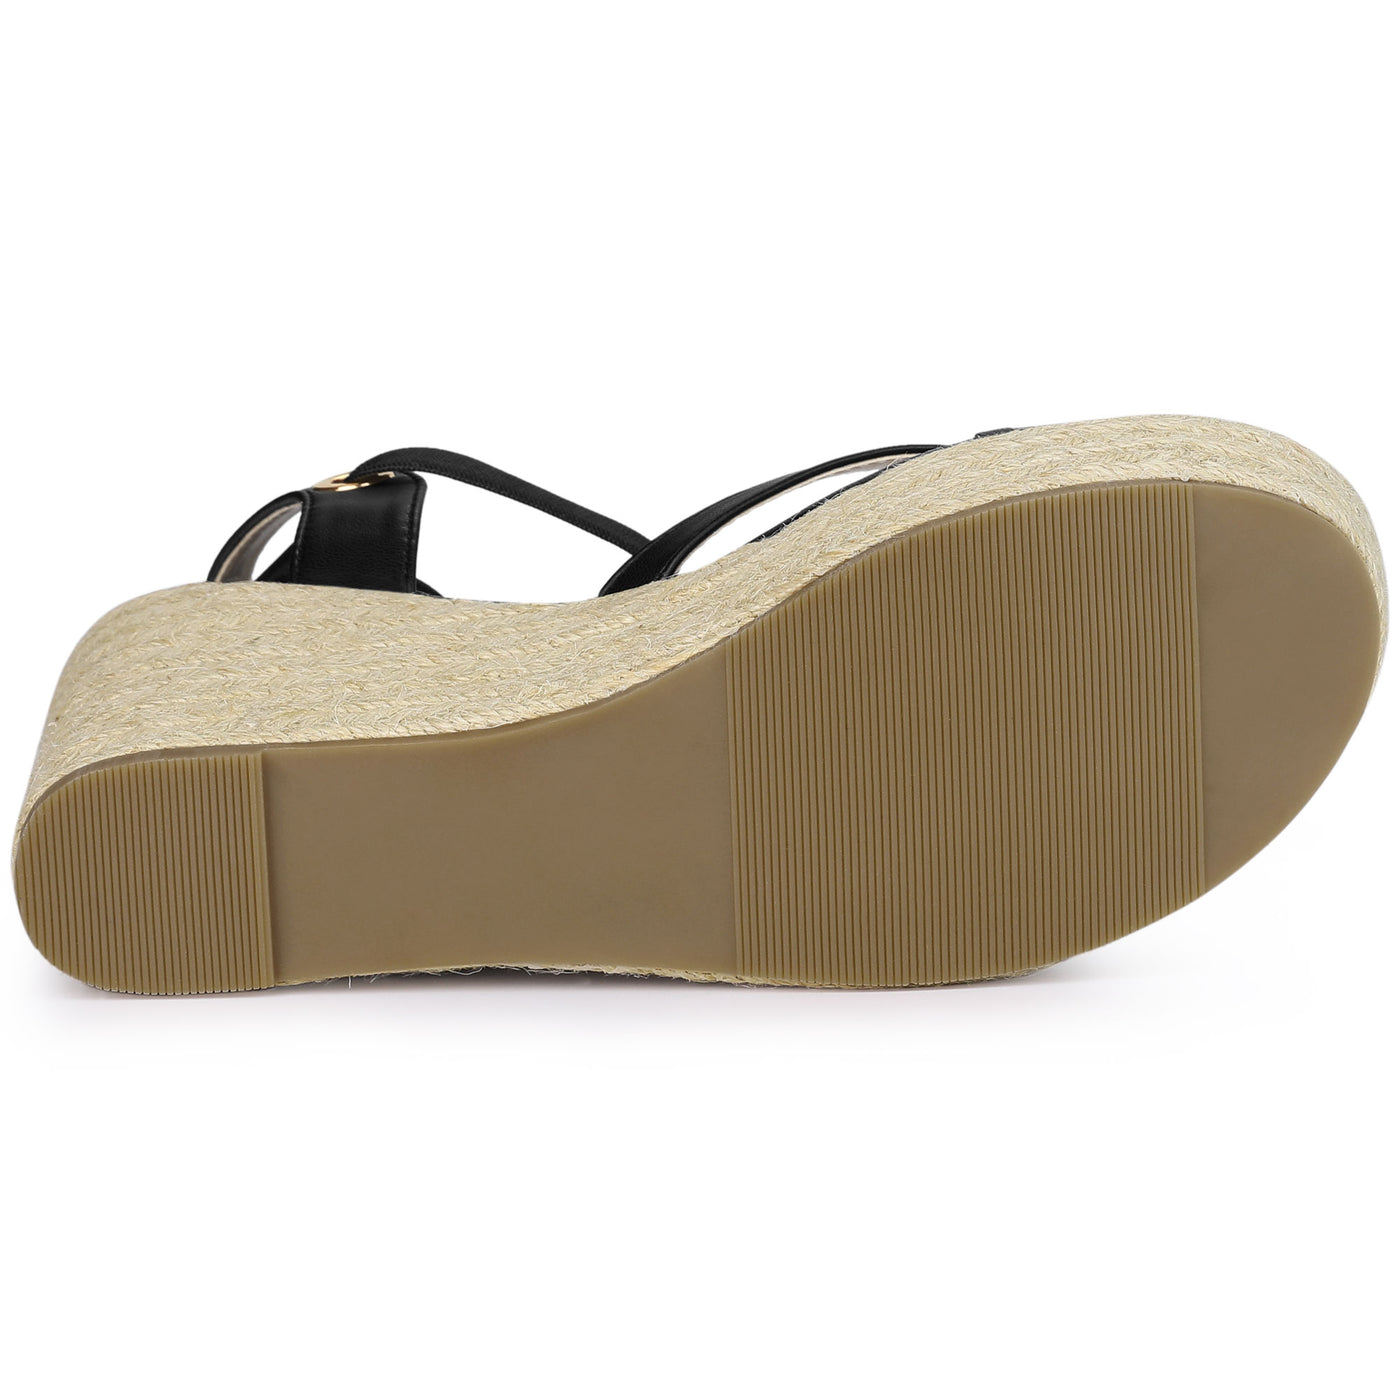 Allegra K Espadrille Platform Lace Up Slingback Flip Flops Wedge Sandals